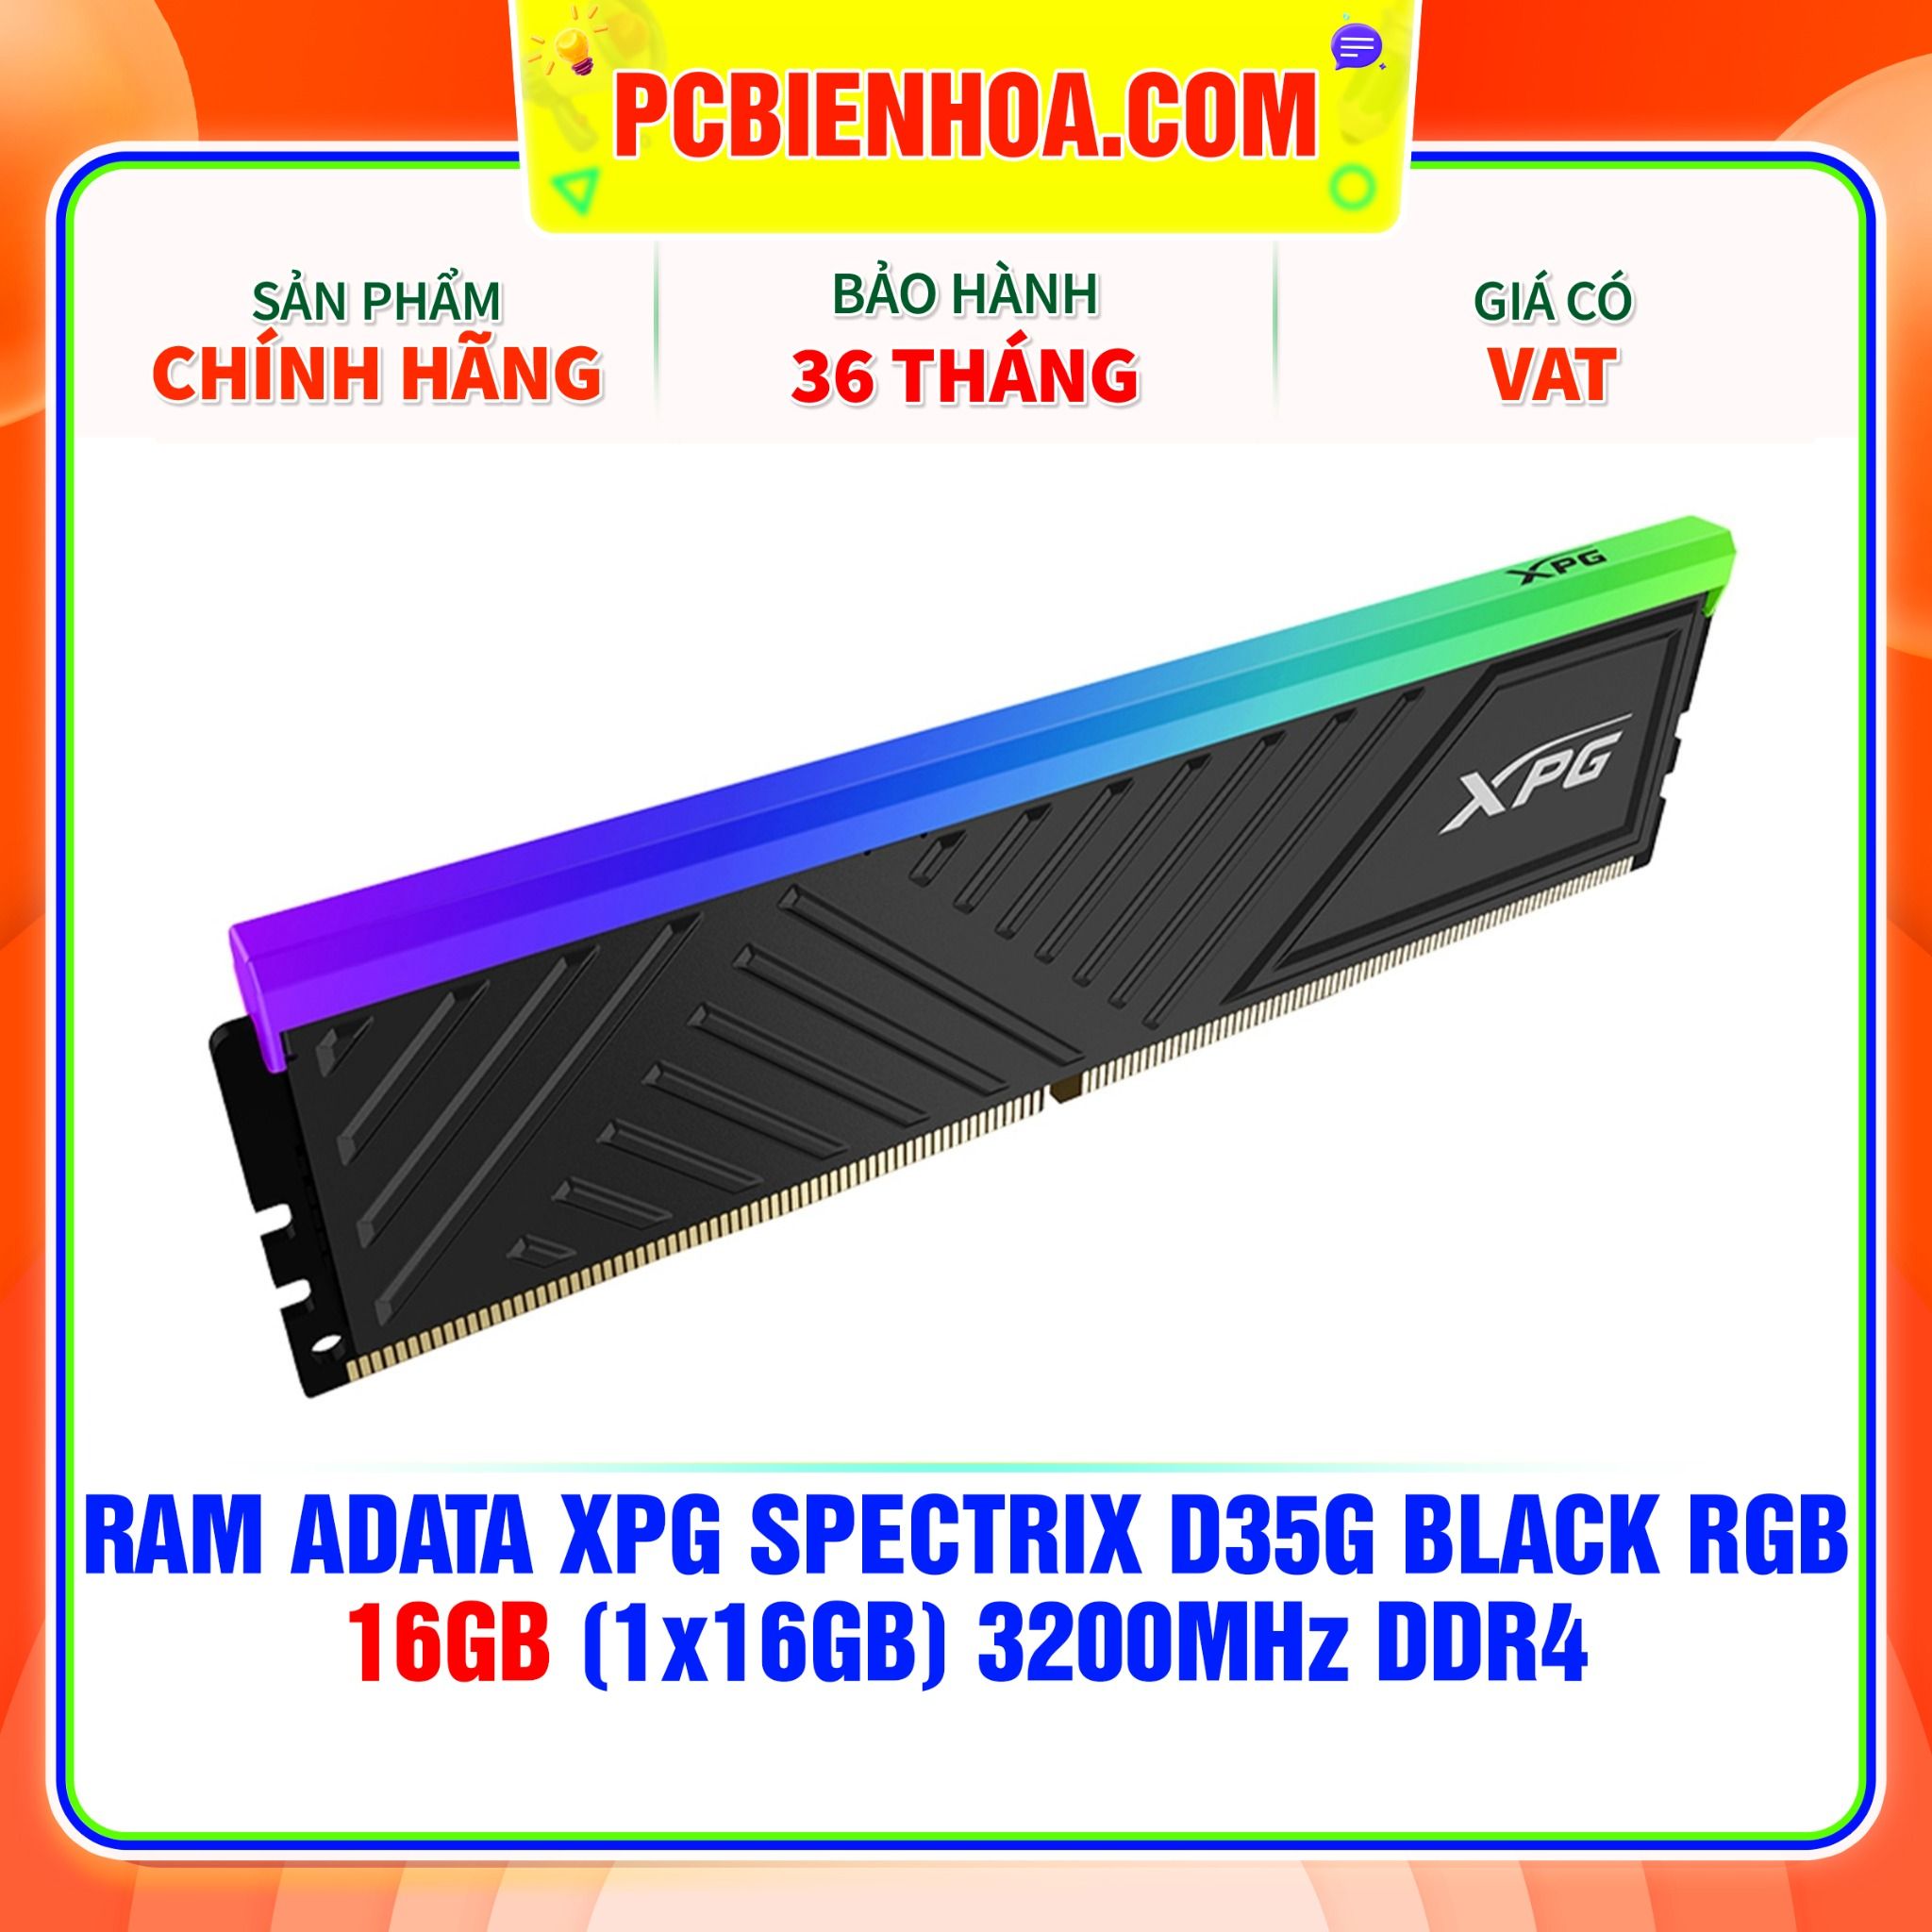  RAM ADATA XPG SPECTRIX D35G BLACK RGB - 16GB (1x16GB) 3200MHz DDR4 